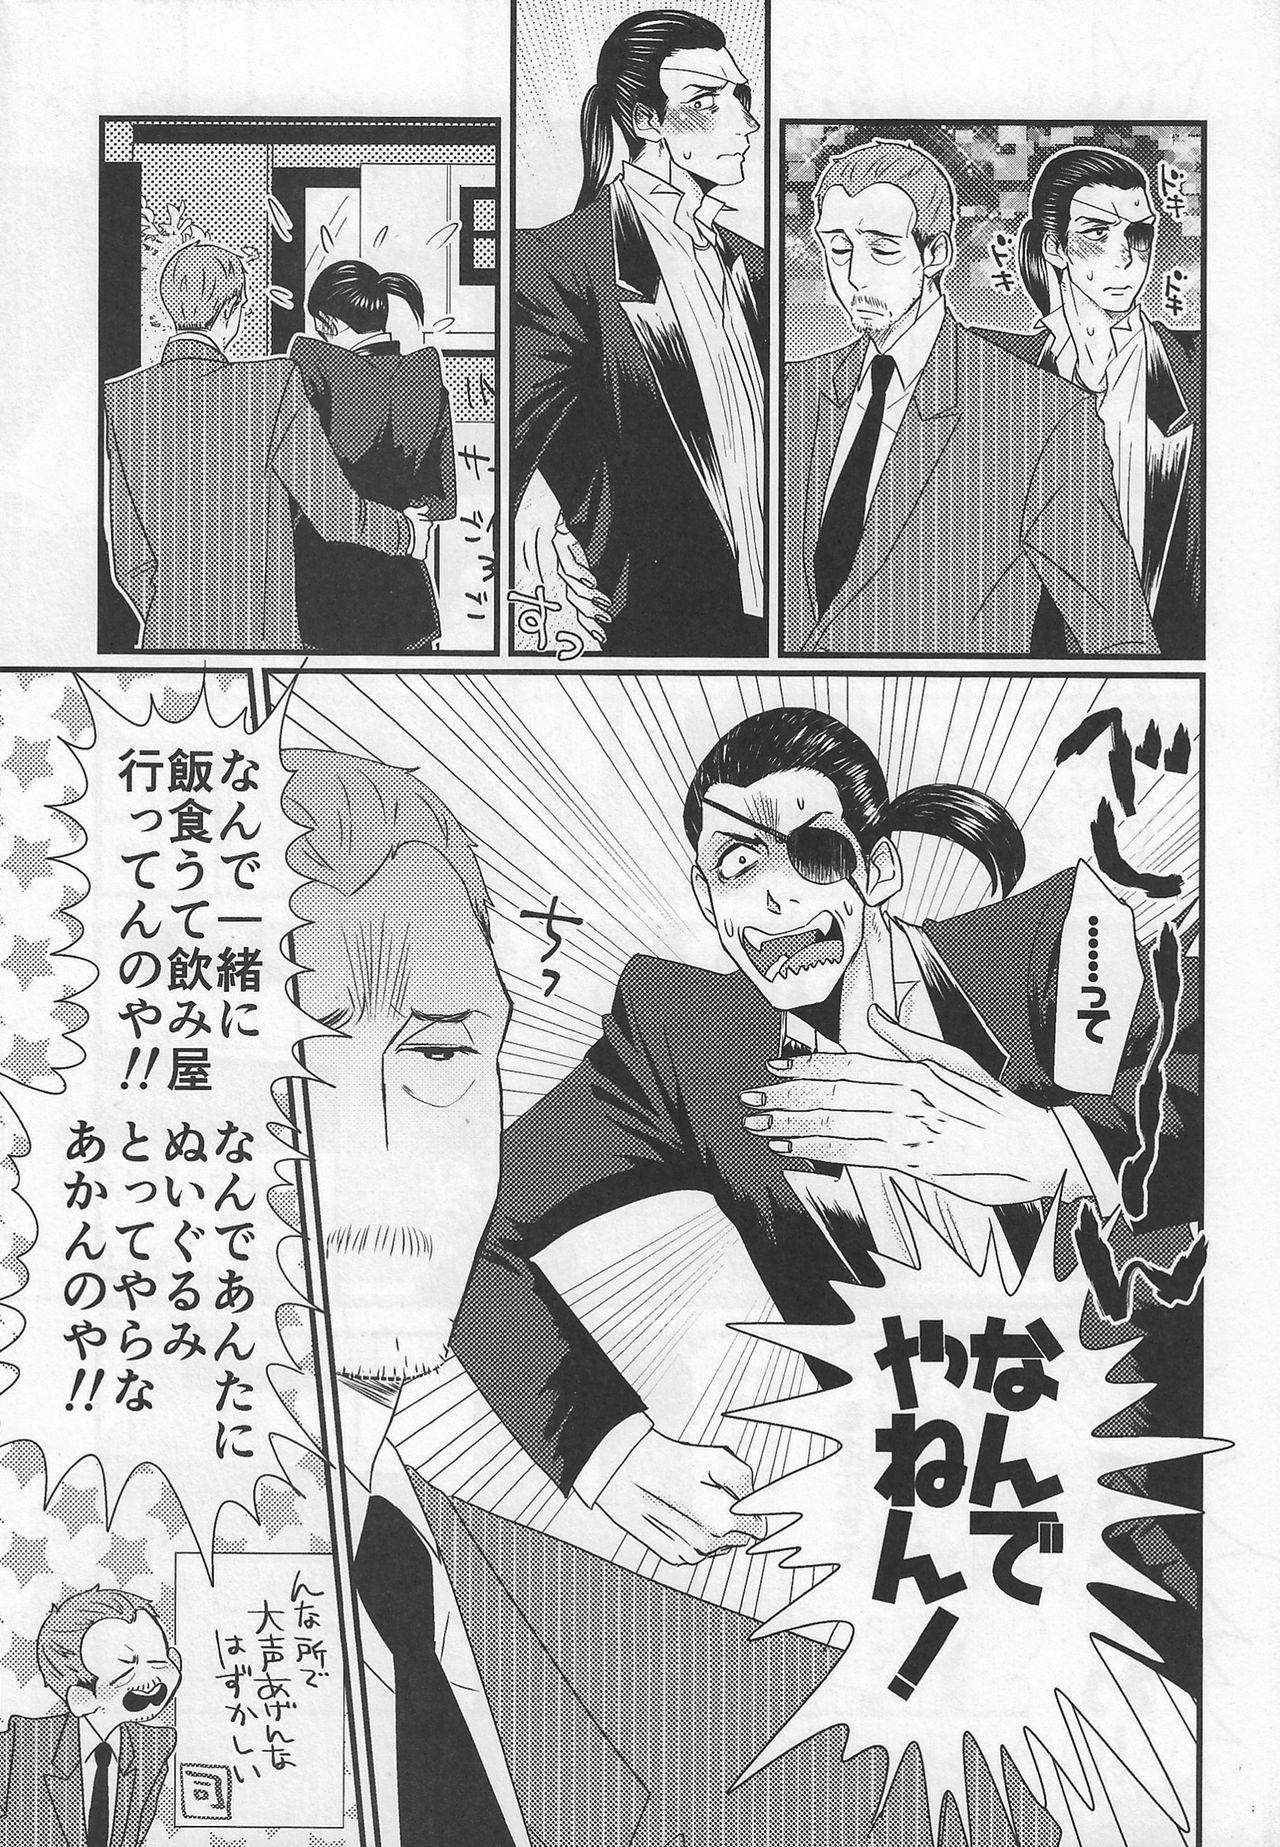 Exhibitionist Today Only - Ryu ga gotoku | yakuza Swing - Page 5